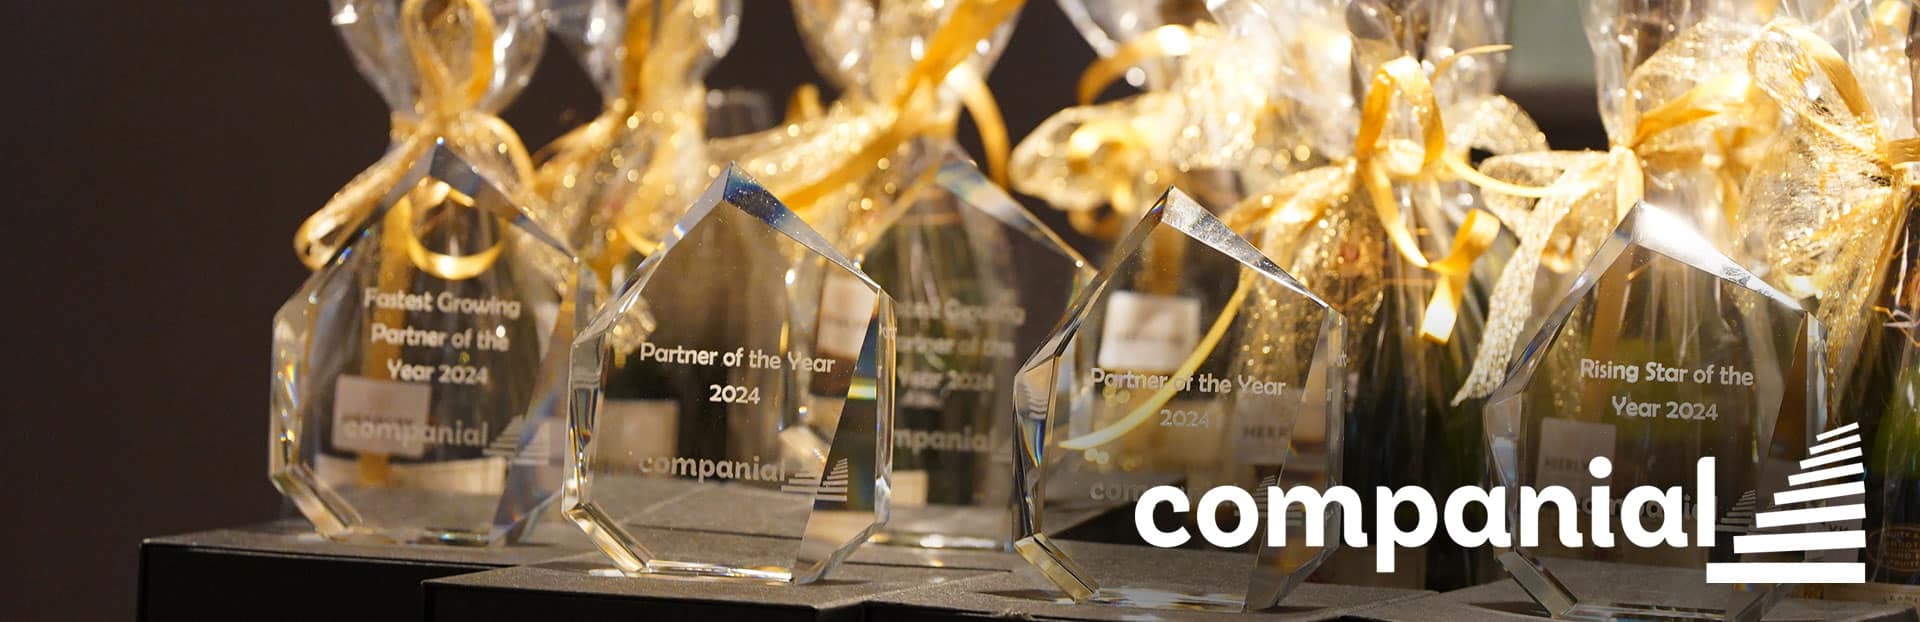 GMI voor het derde jaar op rij Companial ‘Partner of the Year’